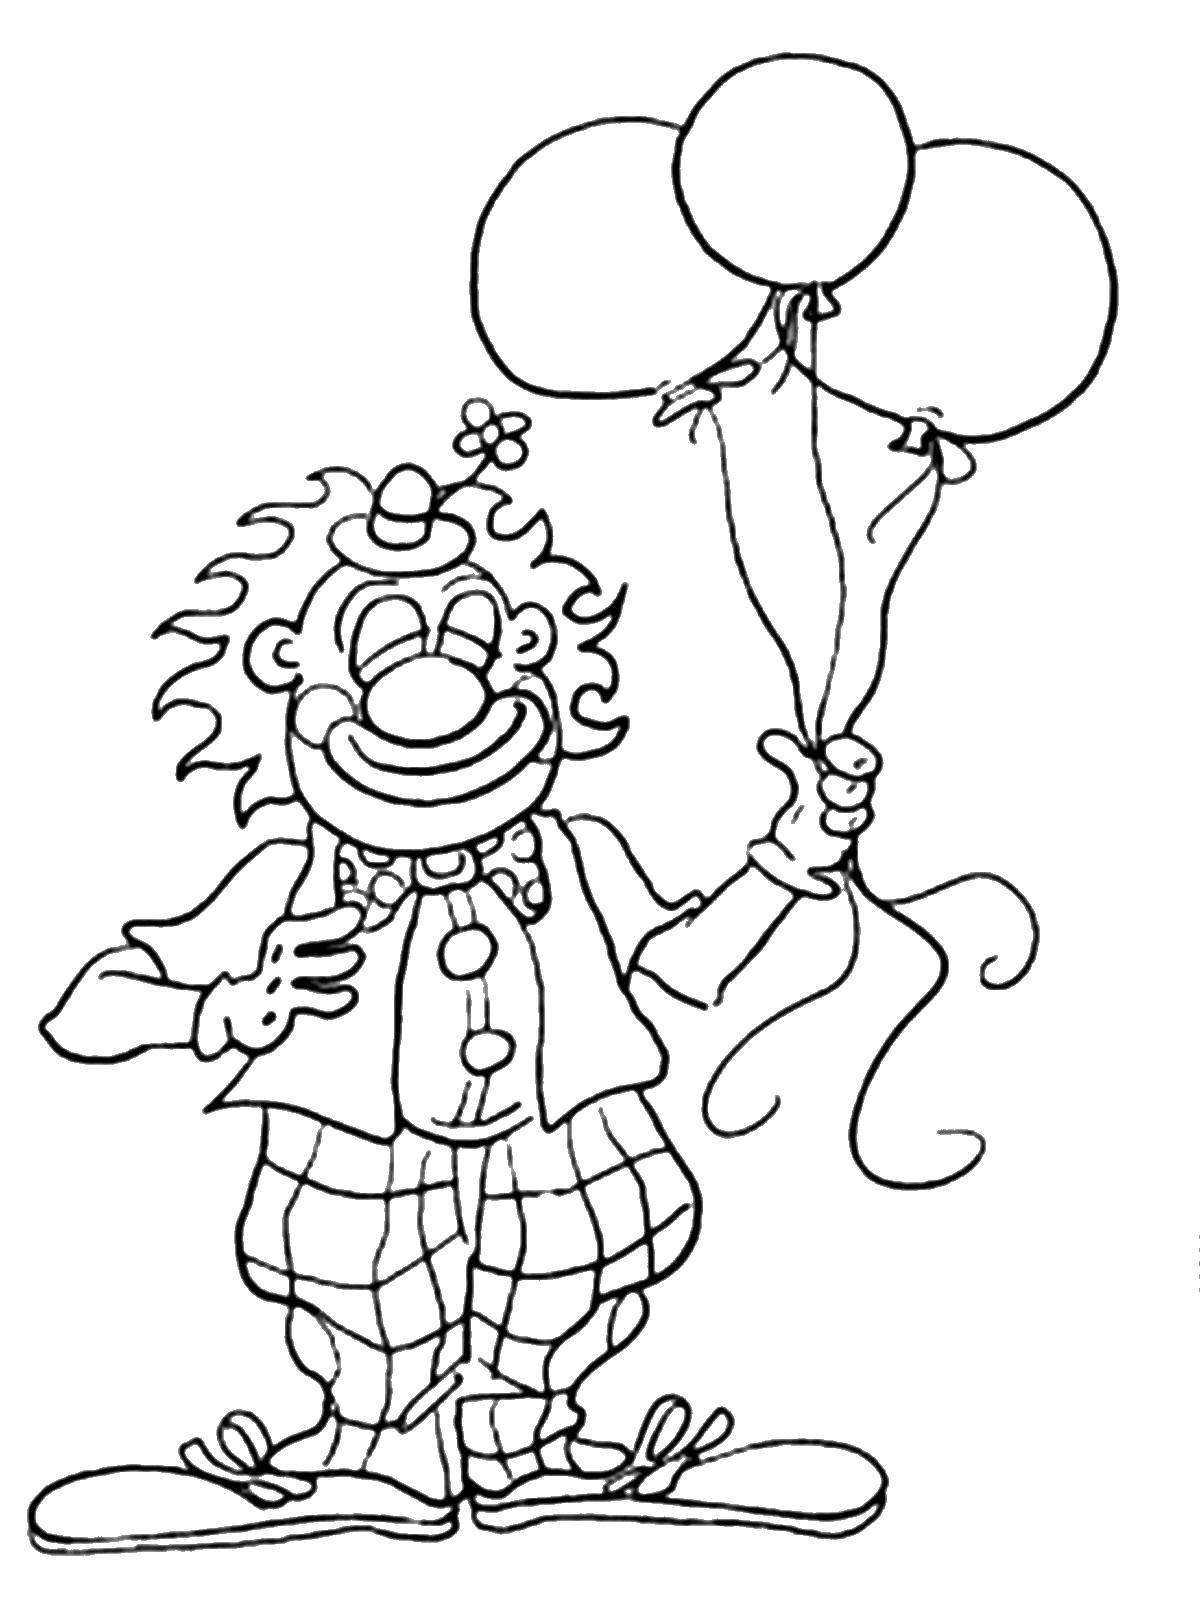 Название: Раскраска Шарики у клоуна. Категория: клоун. Теги: Клоун, цирк, радость, веселье, шарики.